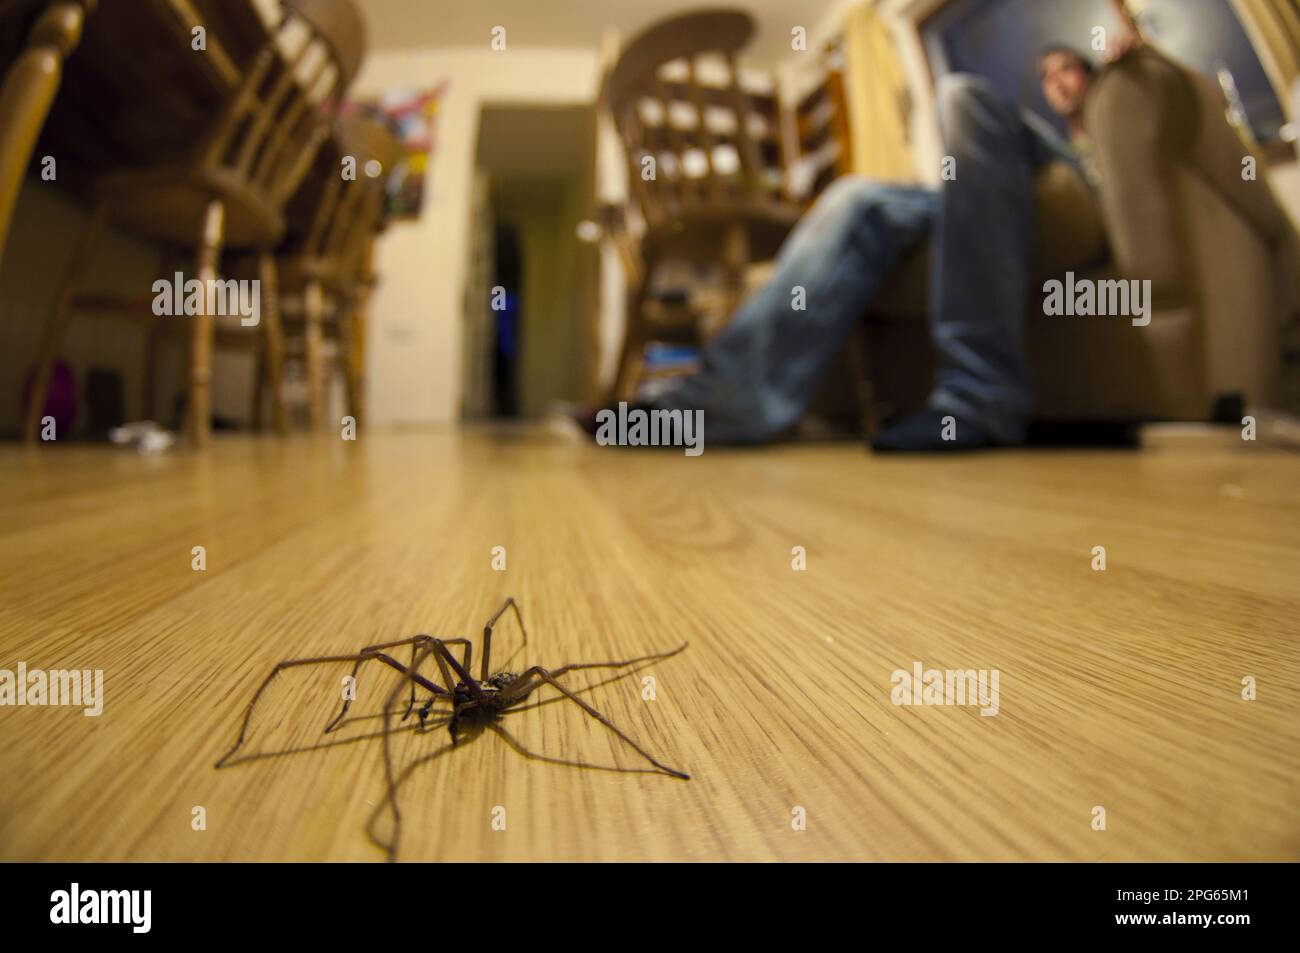 Araignée de maison géante (Tegenaria gigantea), adulte, marchant sur le sol de la salle de séjour, avec une personne assise sur une chaise en arrière-plan, Angleterre, Unis Banque D'Images